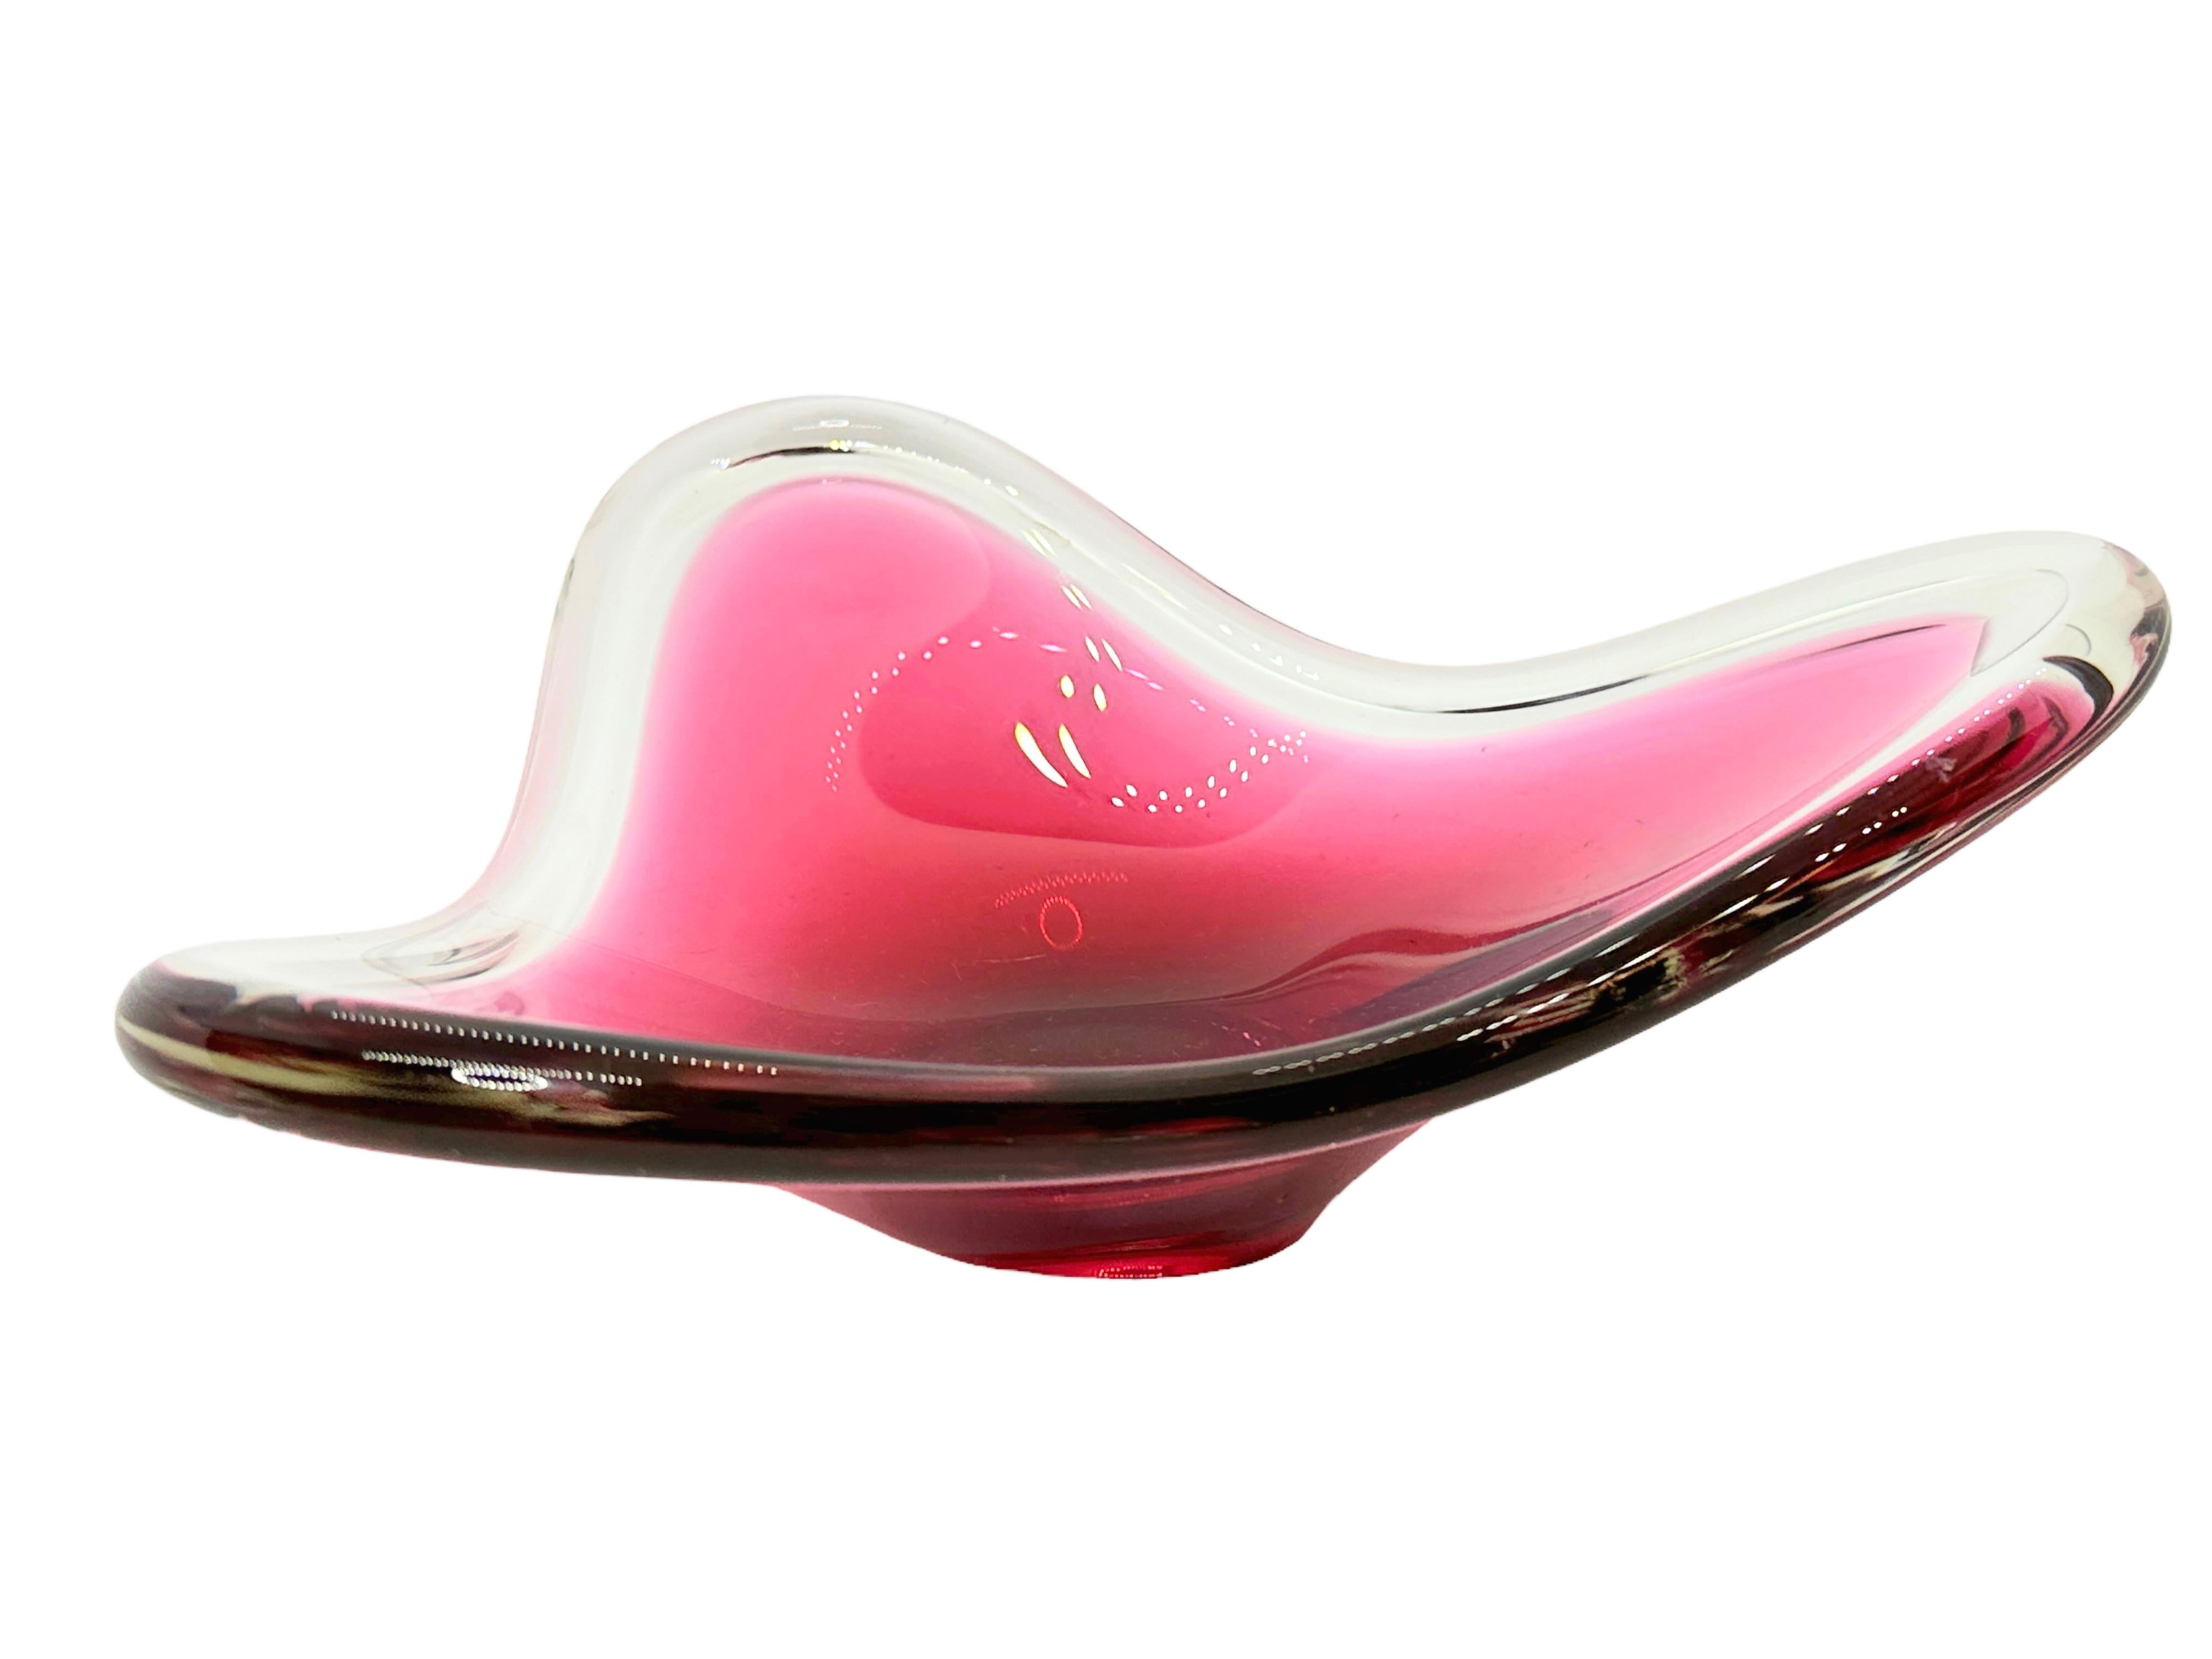 Wunderschönes mundgeblasenes Murano Kunstglas mit Sommerso und Bullicante Techniken. Eine schöne organisch geformte Schale, Auffangschale oder Tafelaufsatz, Venedig, Murano, Italien, 1970er Jahre. Die Farben sind rosa und klar. Eine schöne Ergänzung